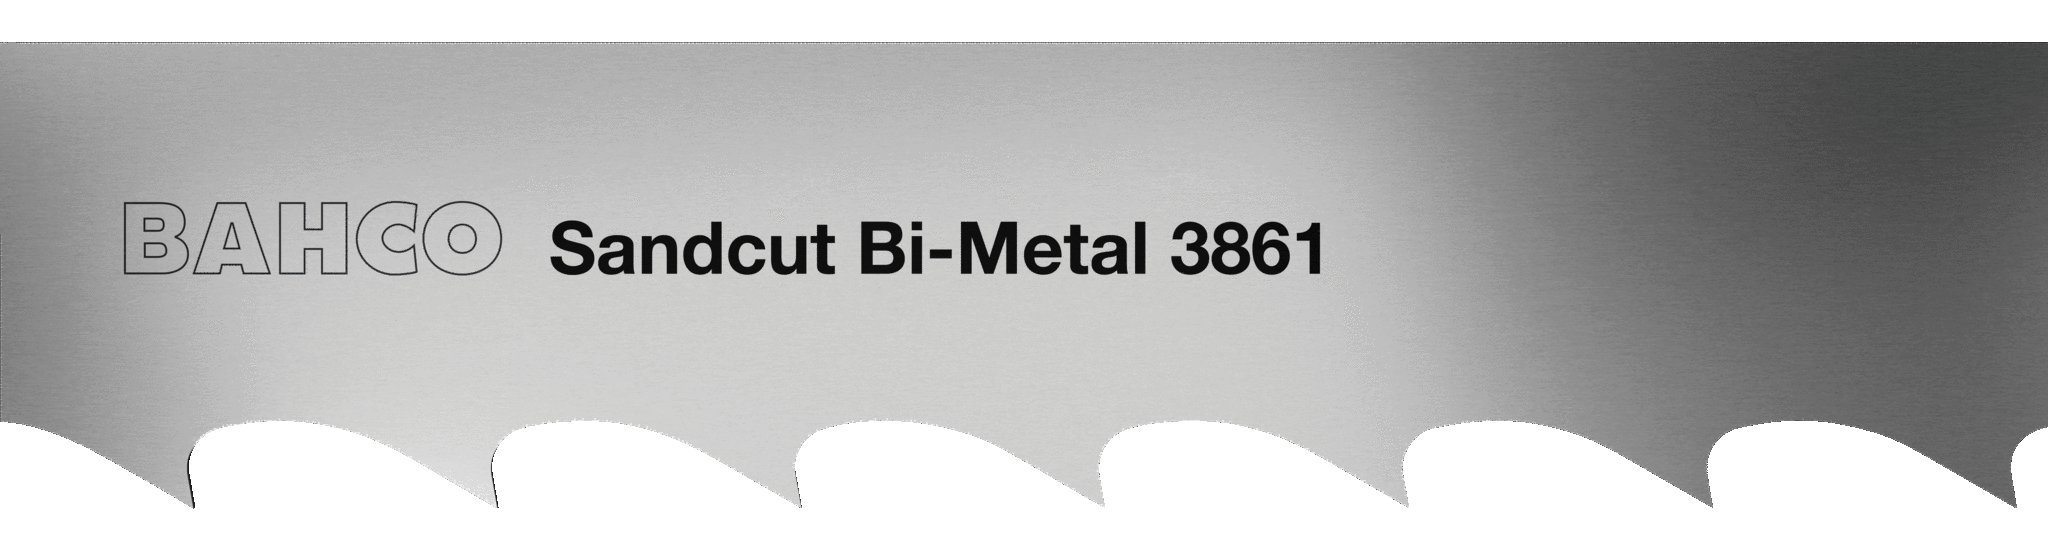 Биметаллические ленточные пилы по дереву BAHCO 3861 Sandcut Bi-metal